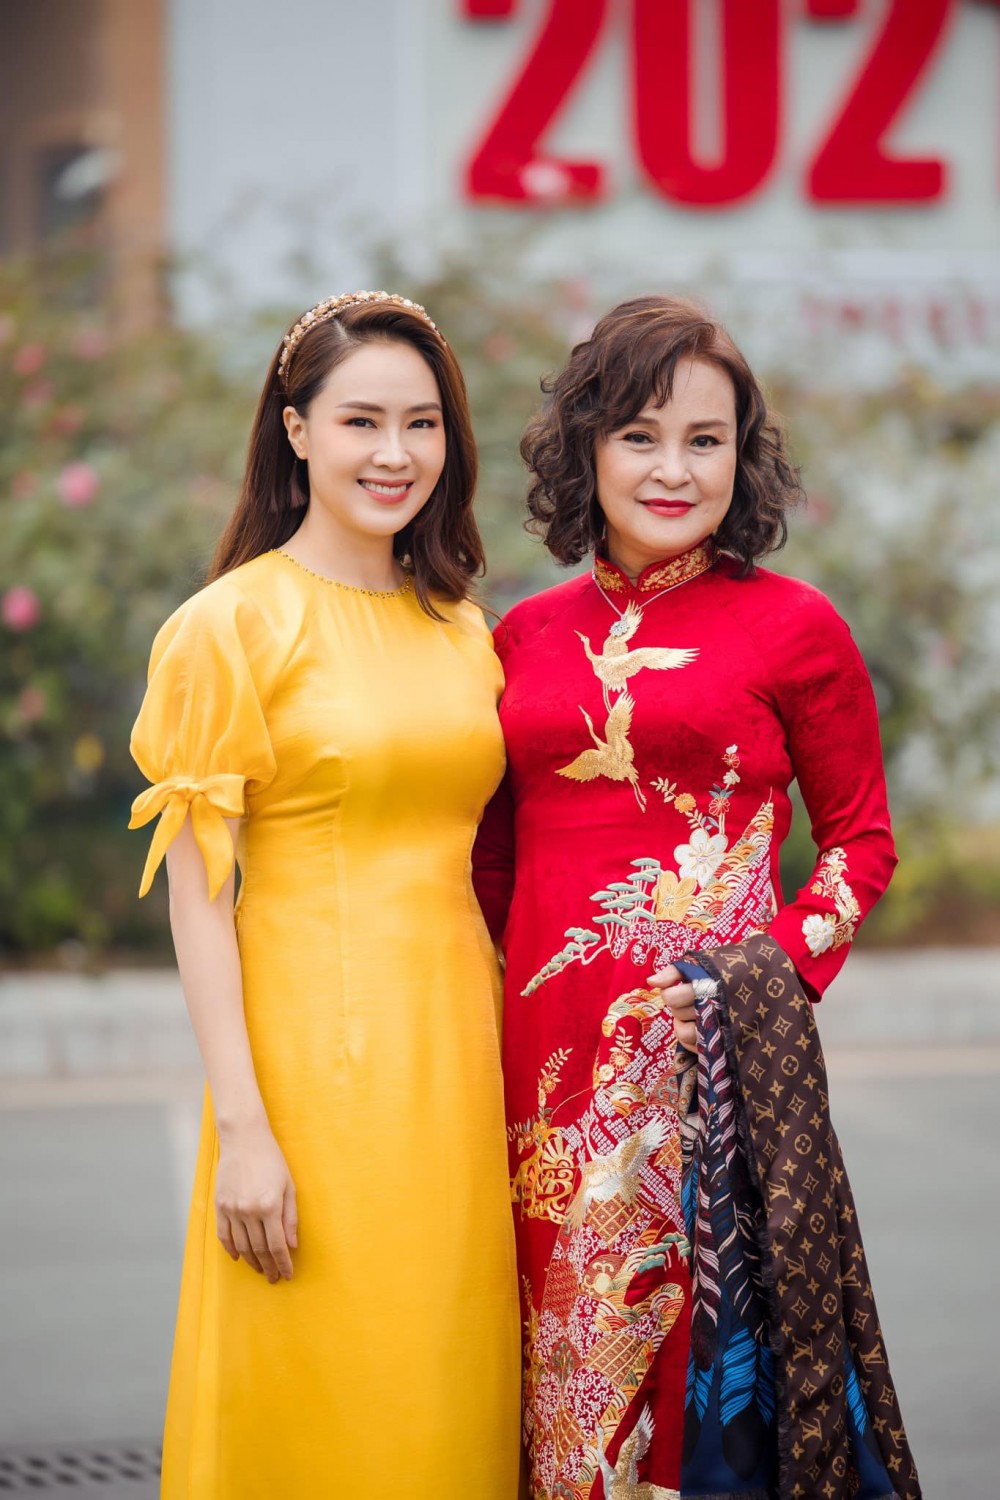 Sao Việt tuần qua: Sơn Tùng M-TP và Thiều Bảo Trâm 'đường ai nấy đi', 'trà xanh' trở nên hot, Vân Hugo đăng ảnh bên chồng sắp cưới